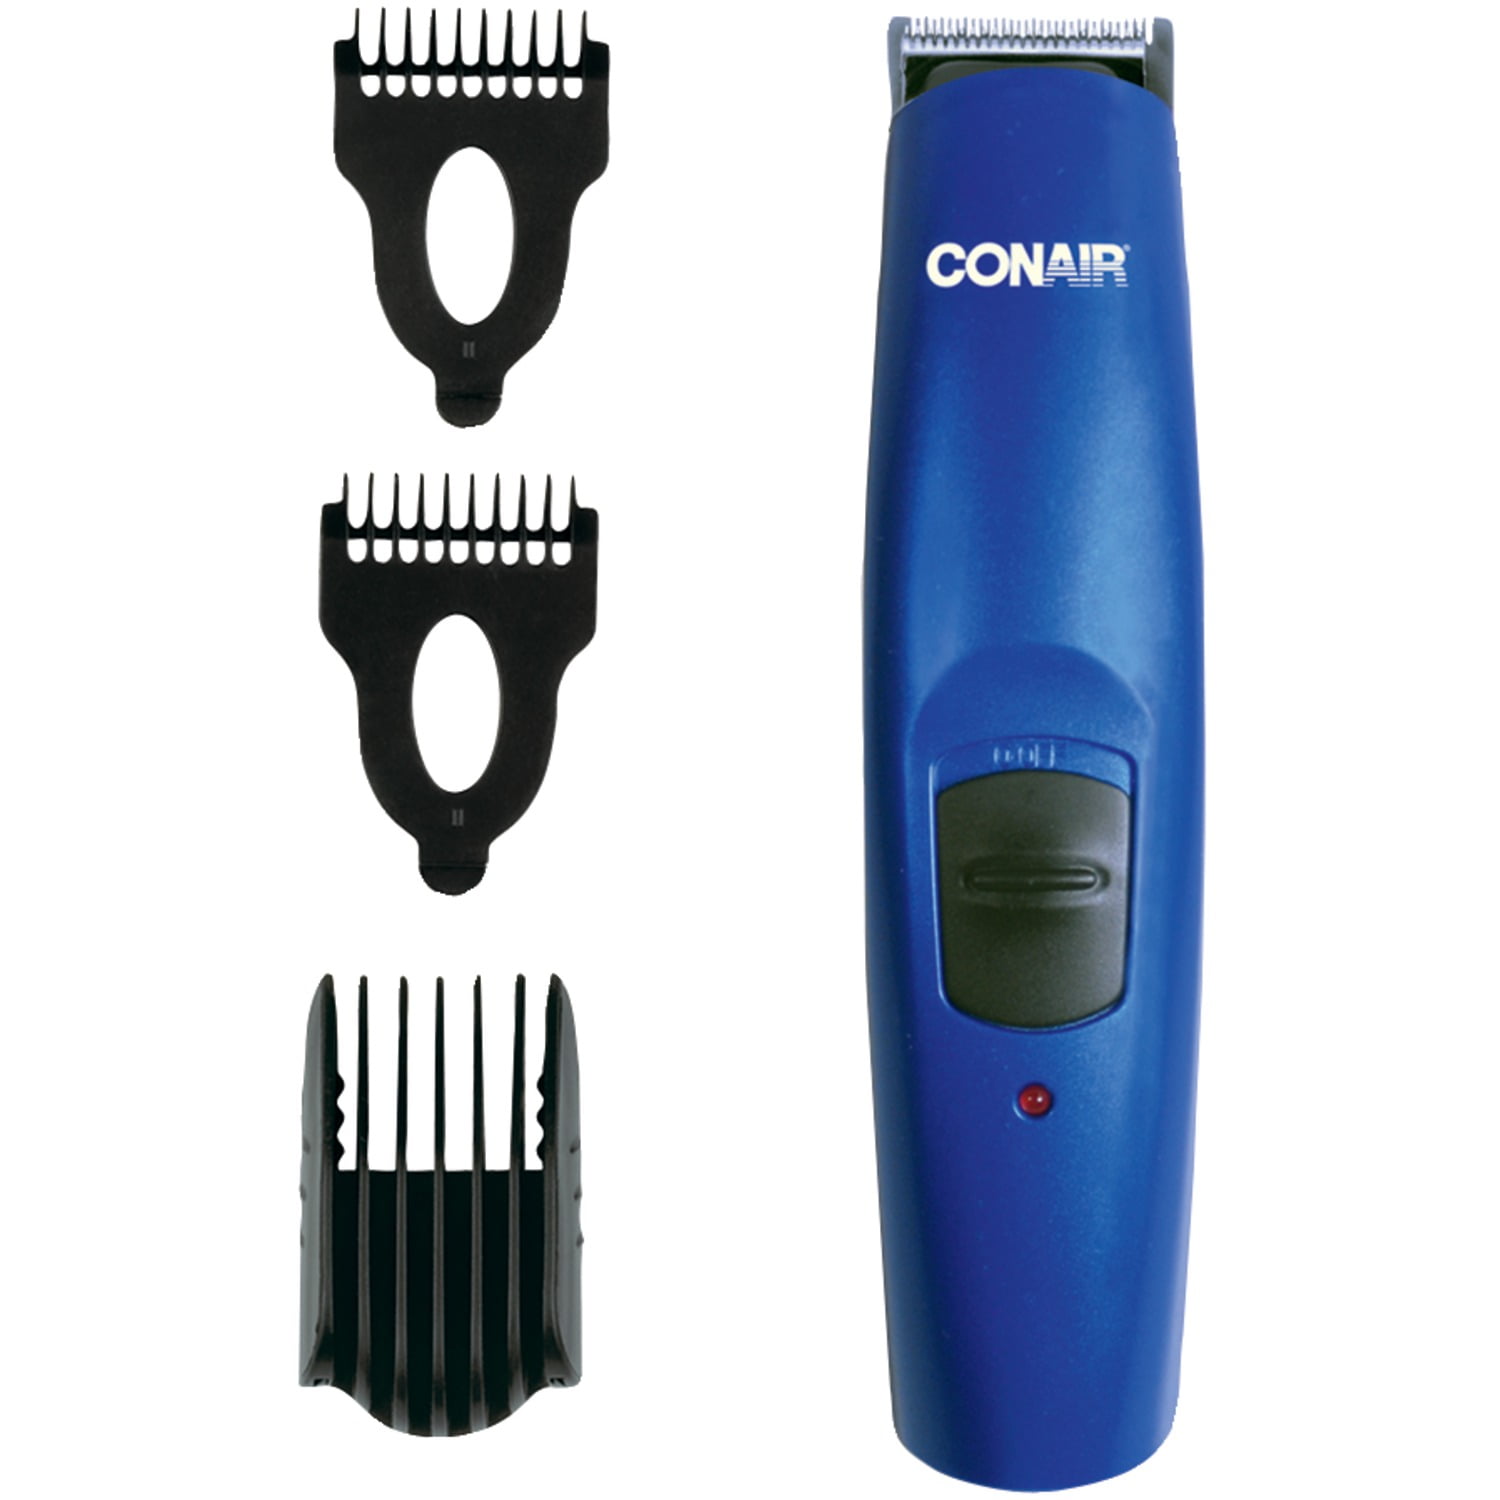 conair hair trimmer walmart